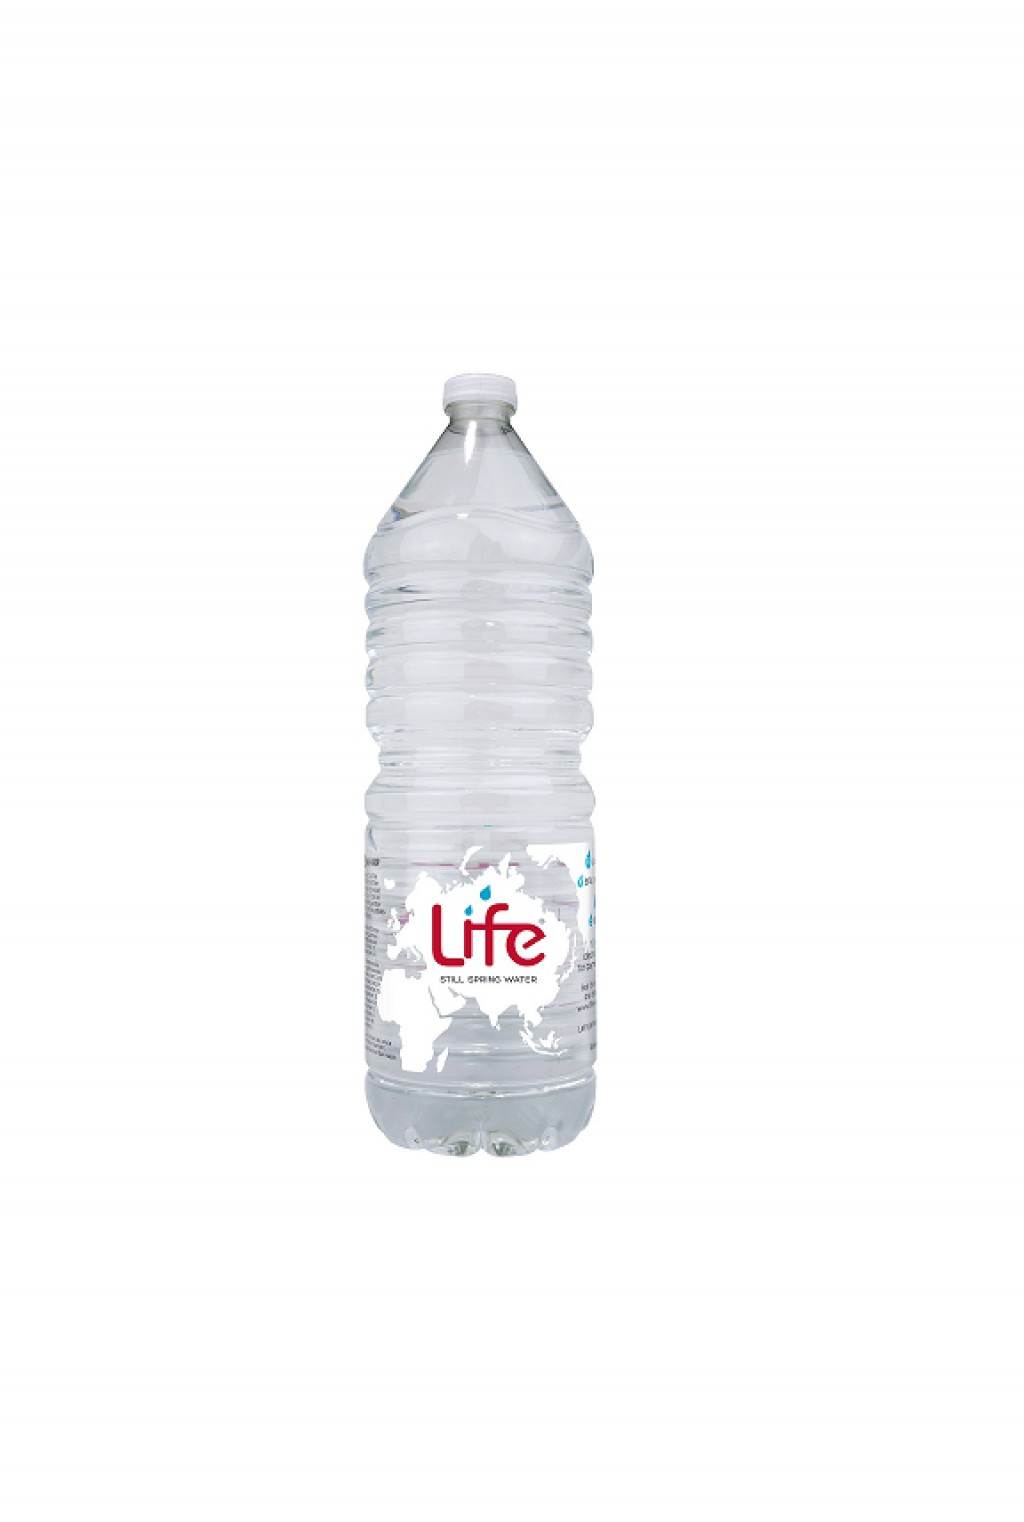 LIFE Still Water (2ltr)